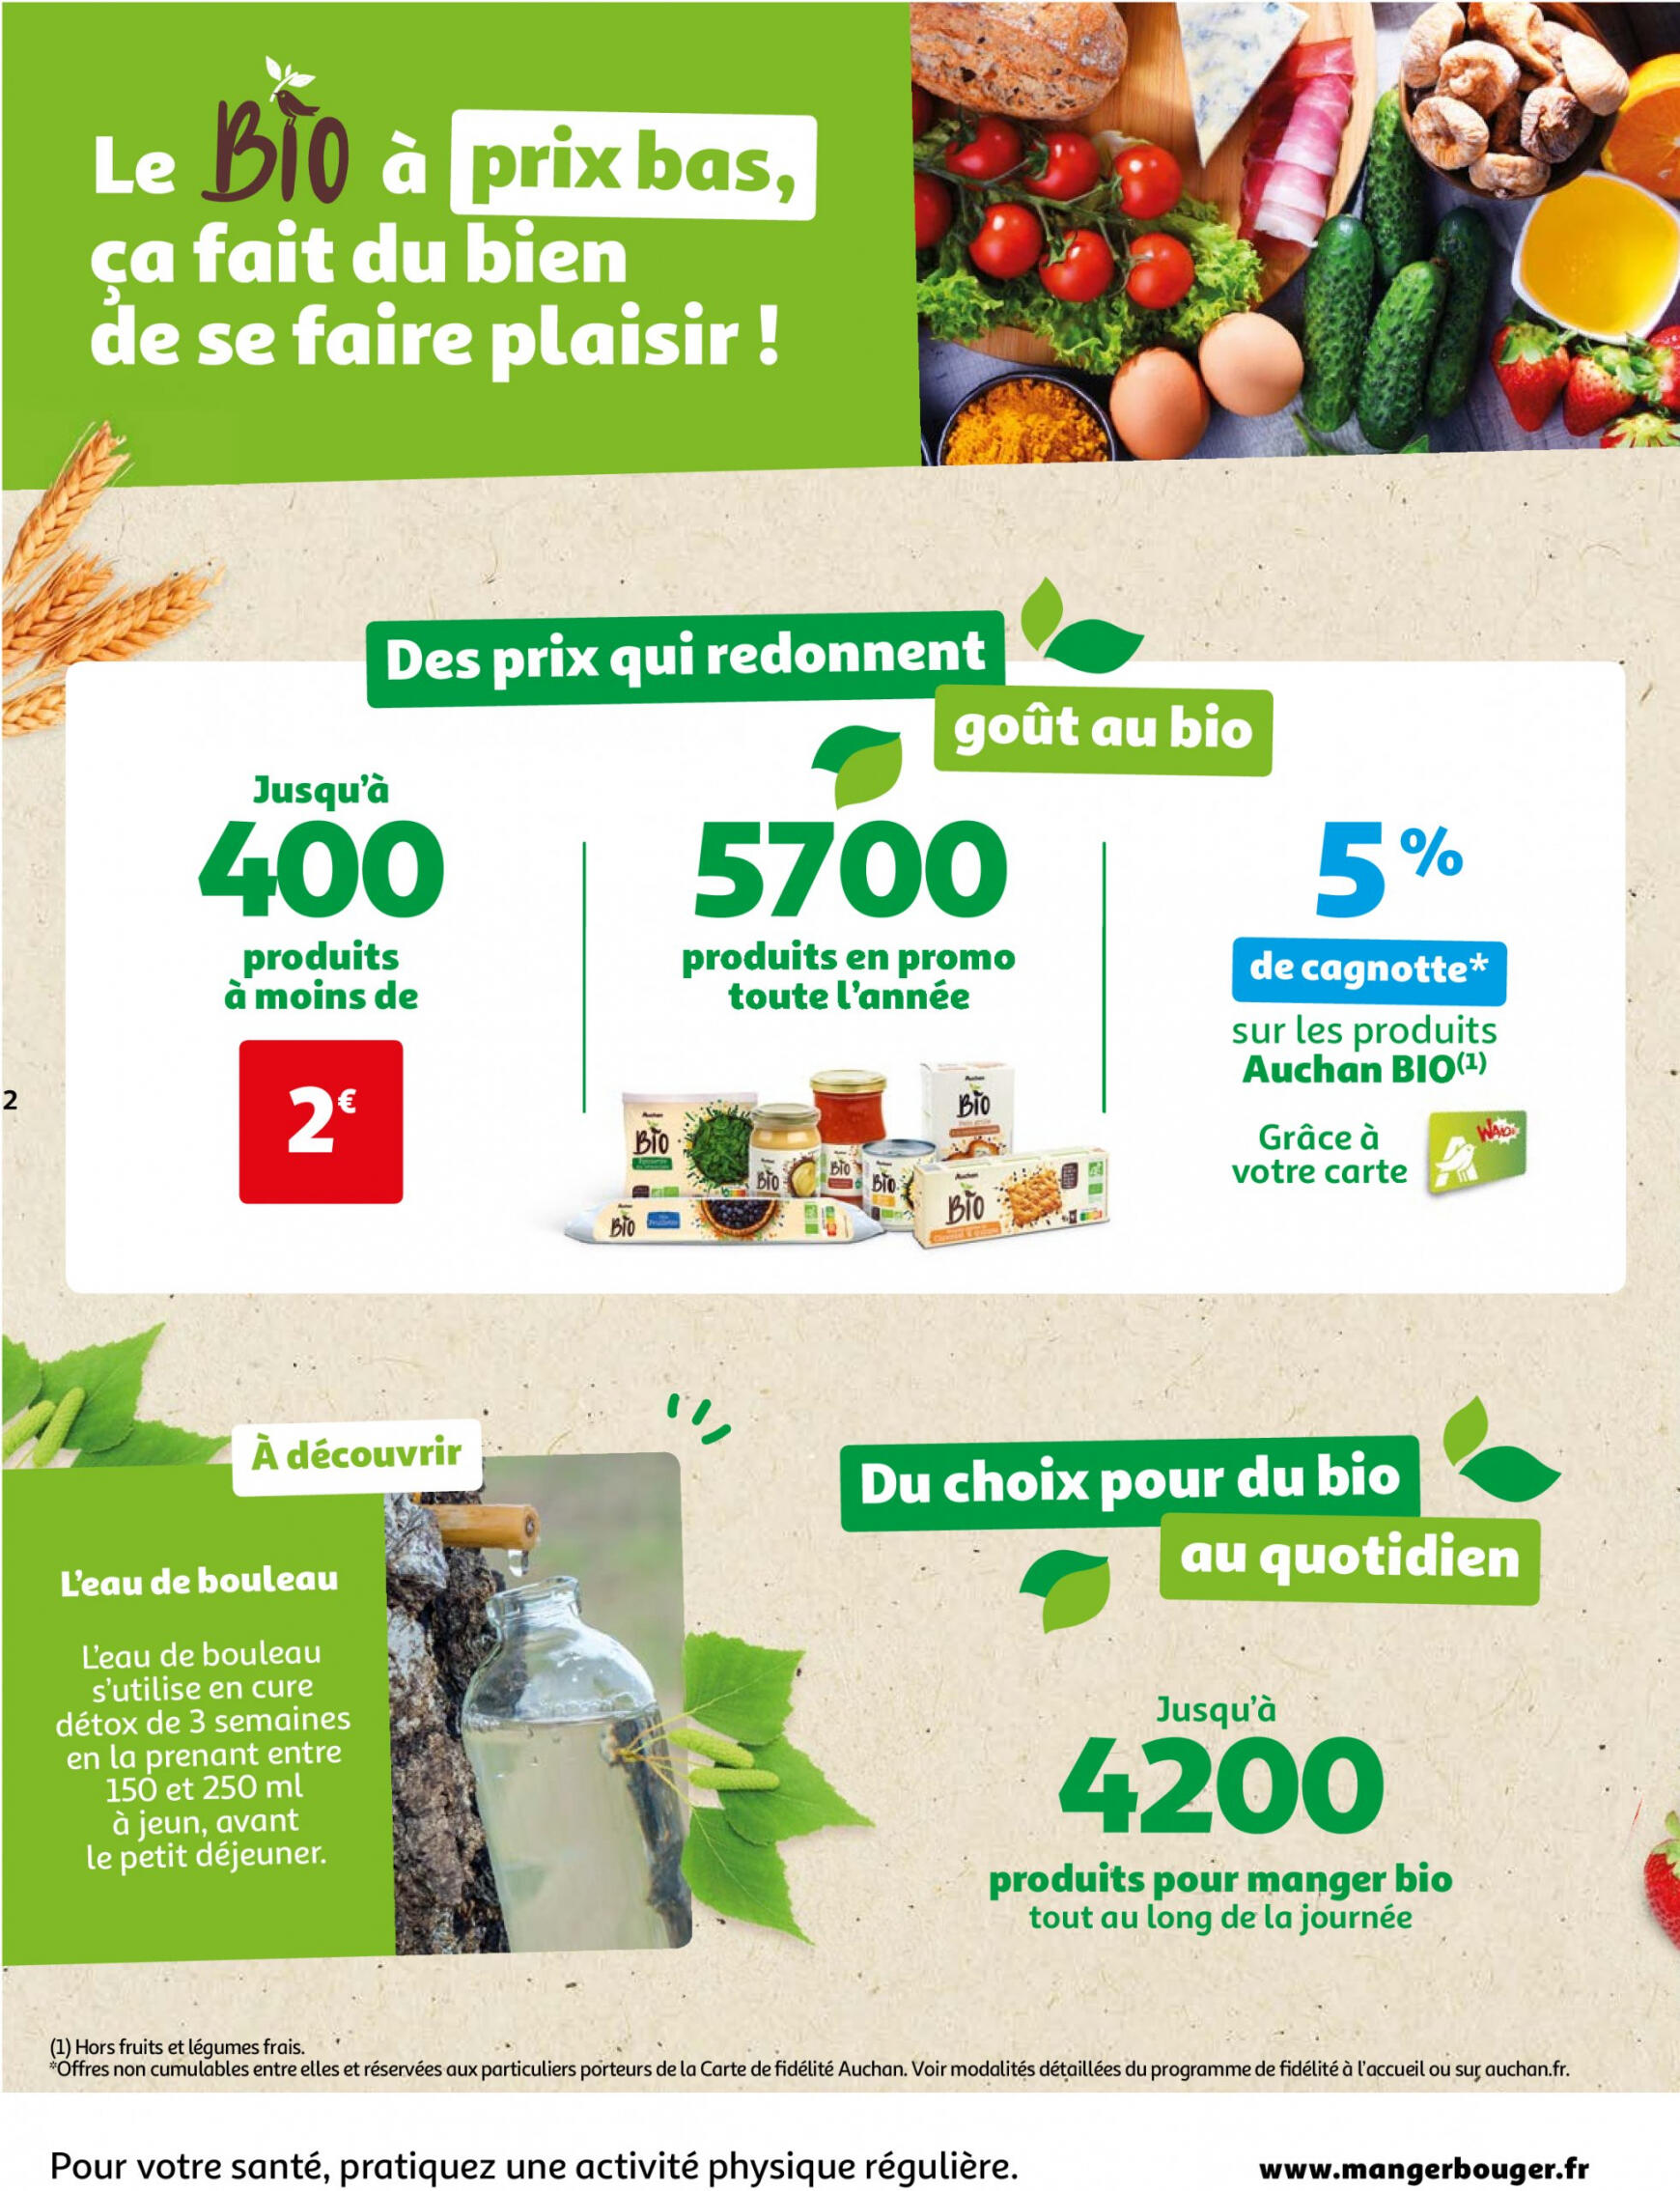 auchan - Auchan - Faites le plein de bio à prix bas folder huidig 22.05. - 03.06. - page: 2